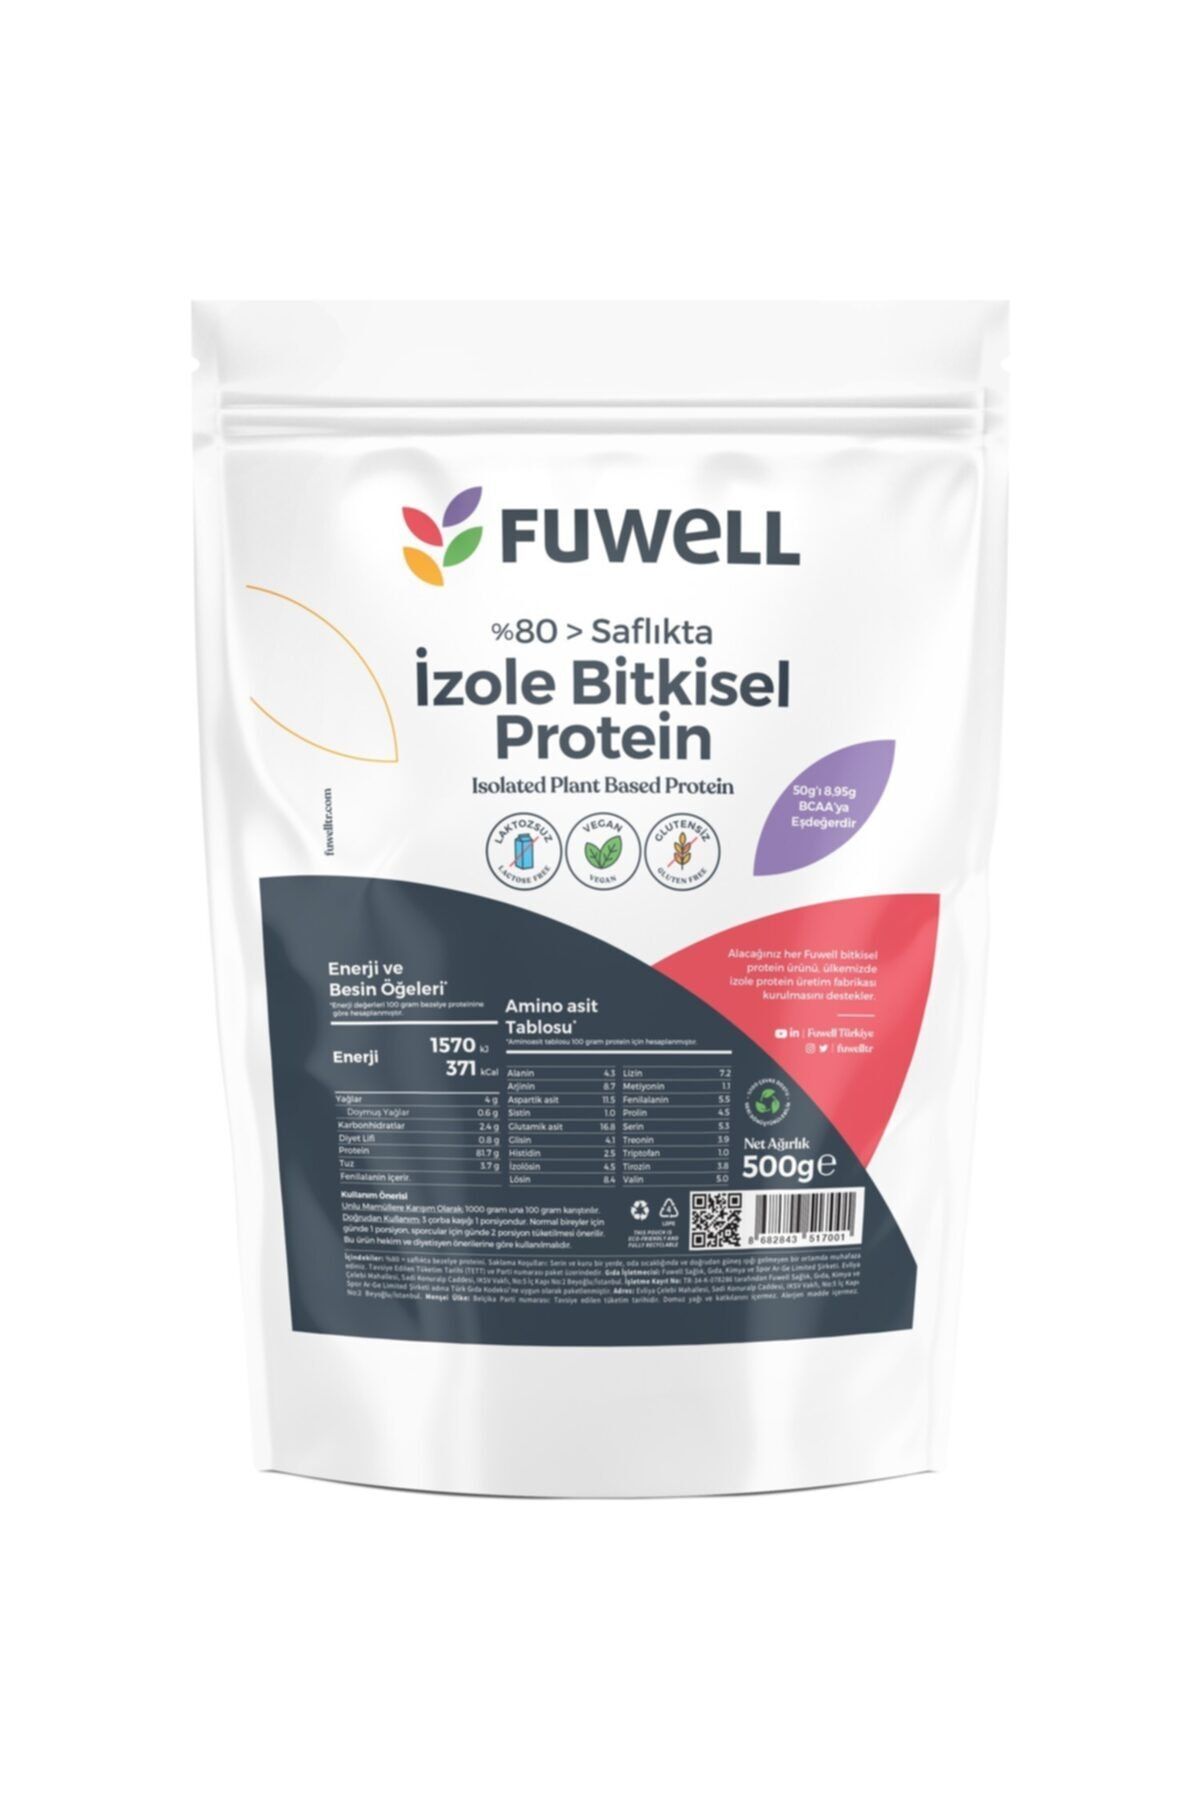 Fuwell Izole Bitkisel Protein